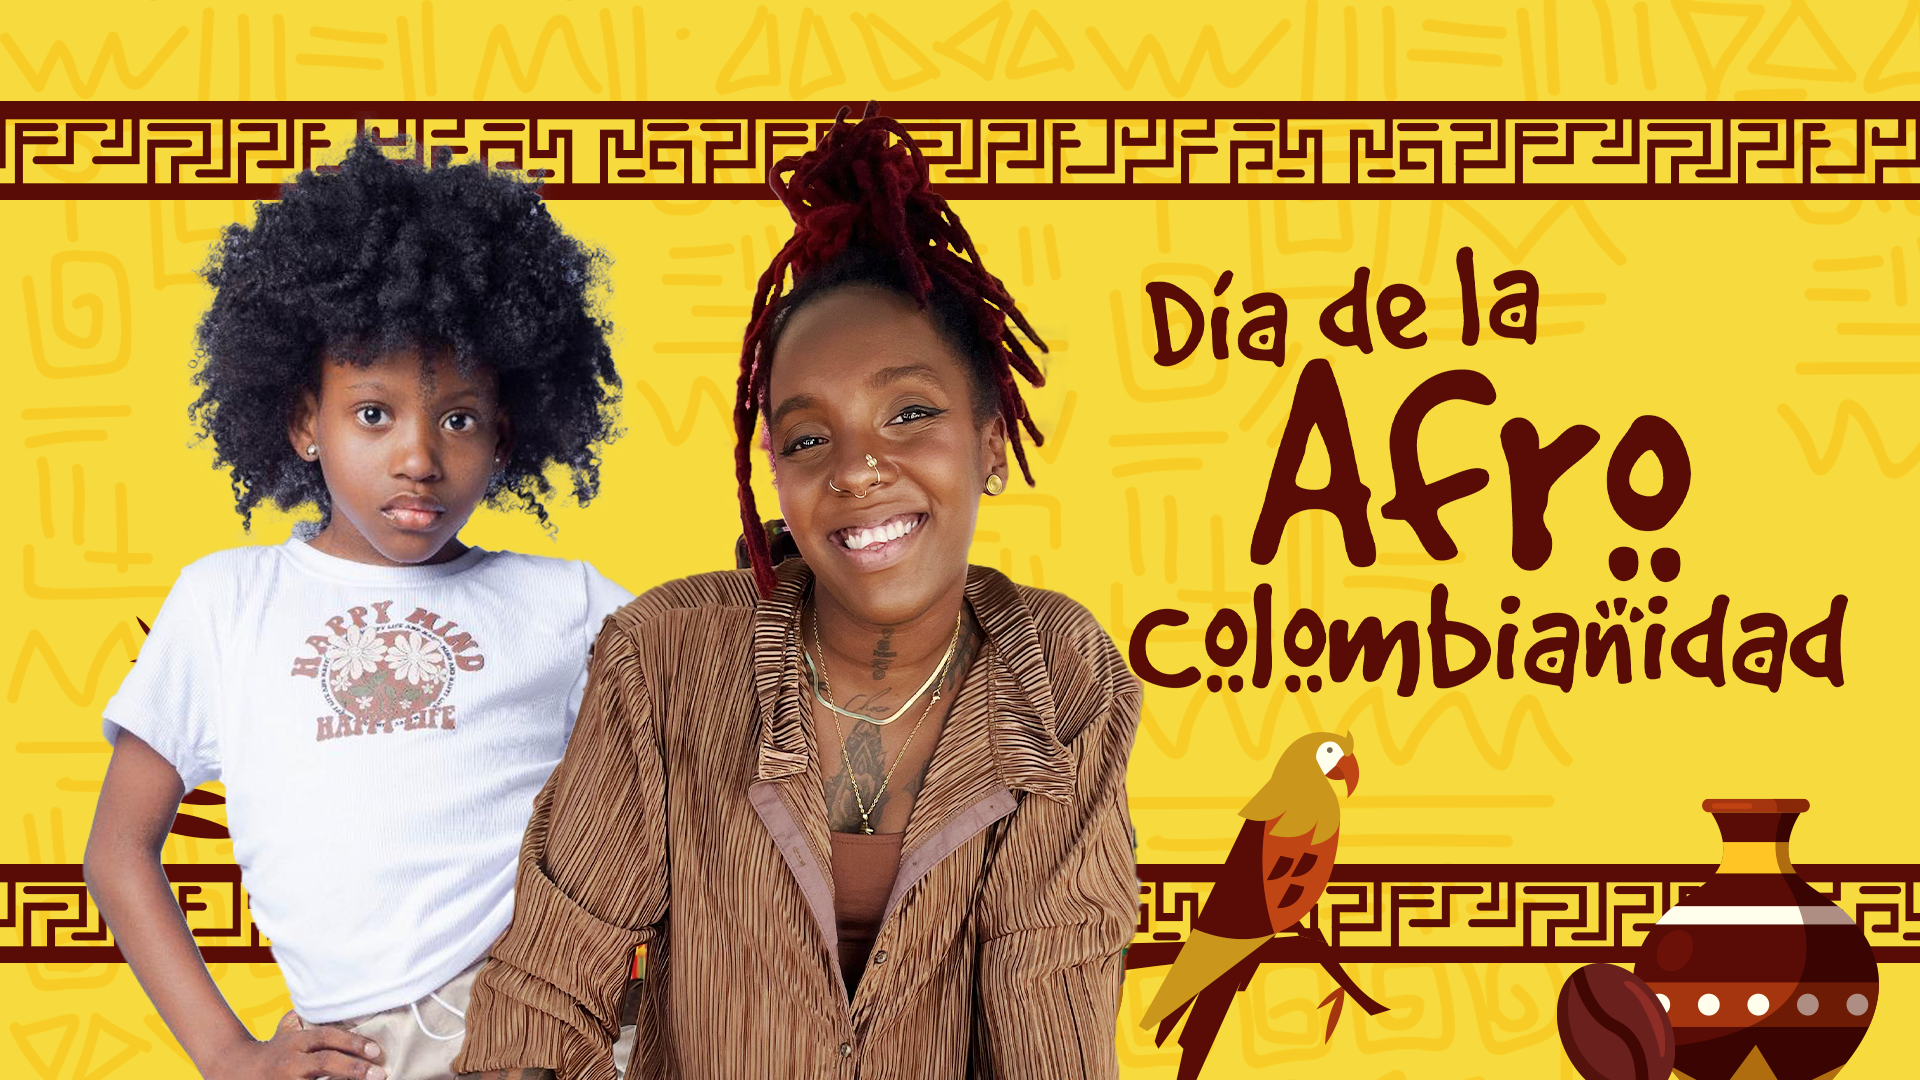 ¿Qué es y por qué celebramos la afrocolombianidad?